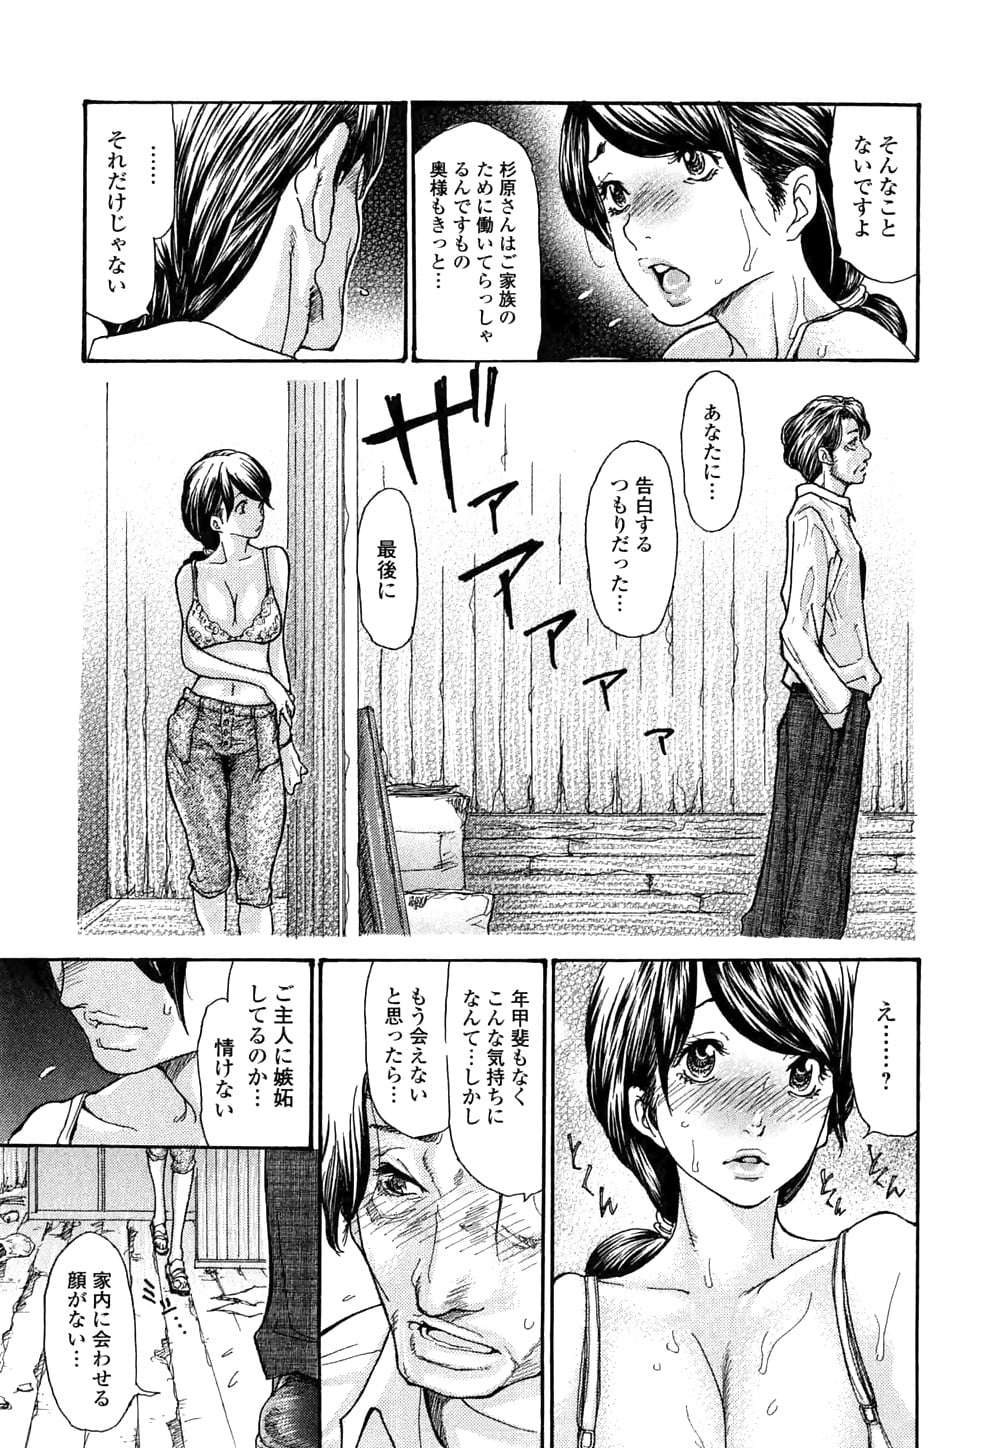 manga 19